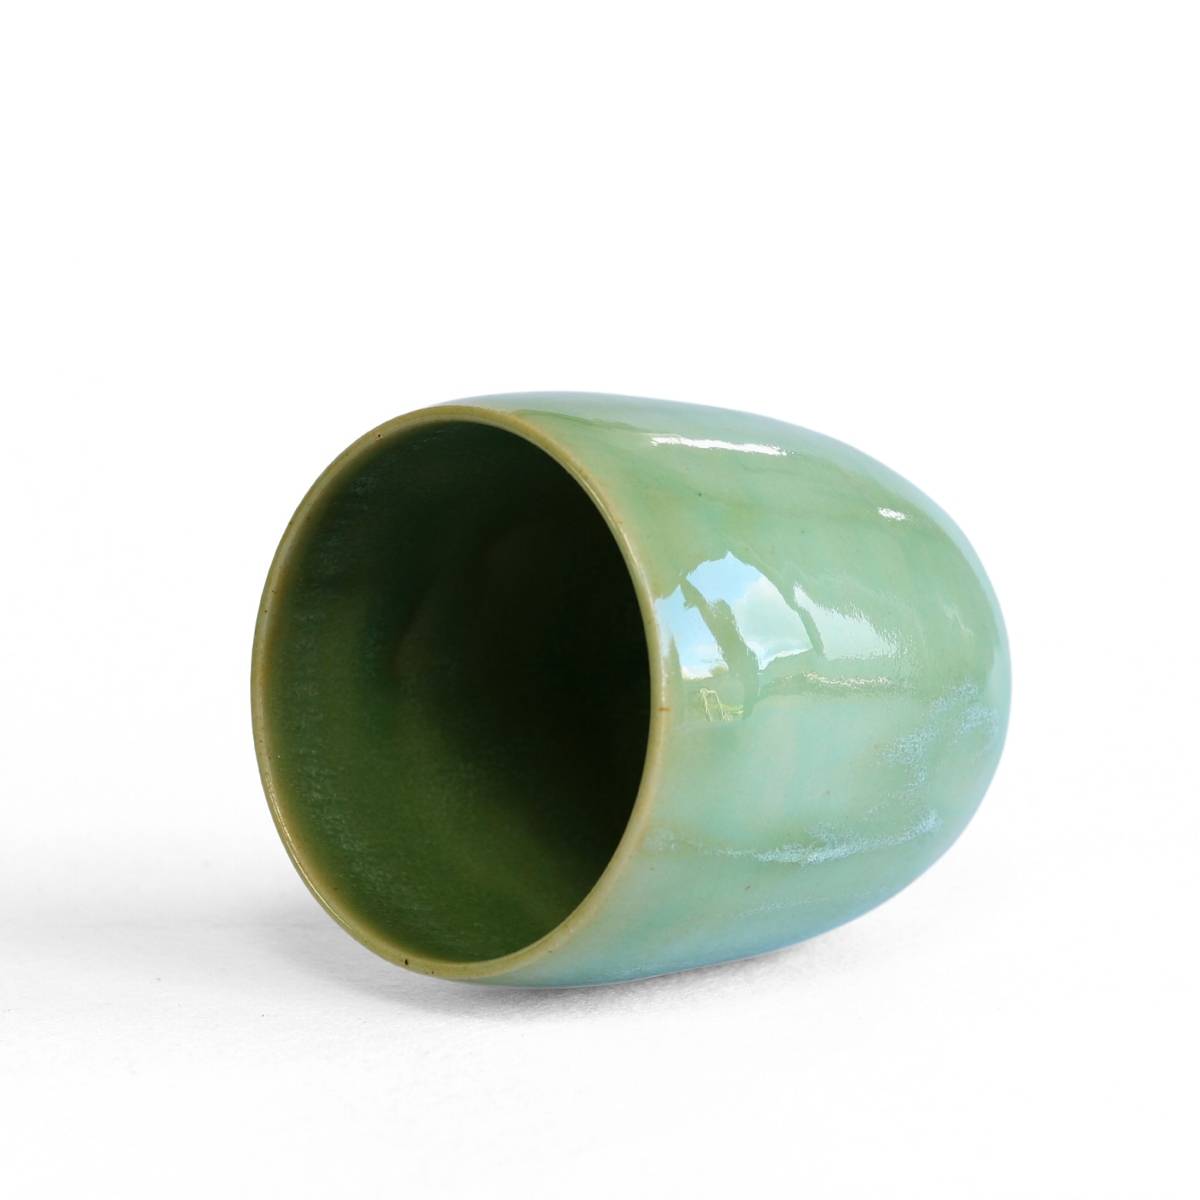 Ceramic mug Forrest 14-1